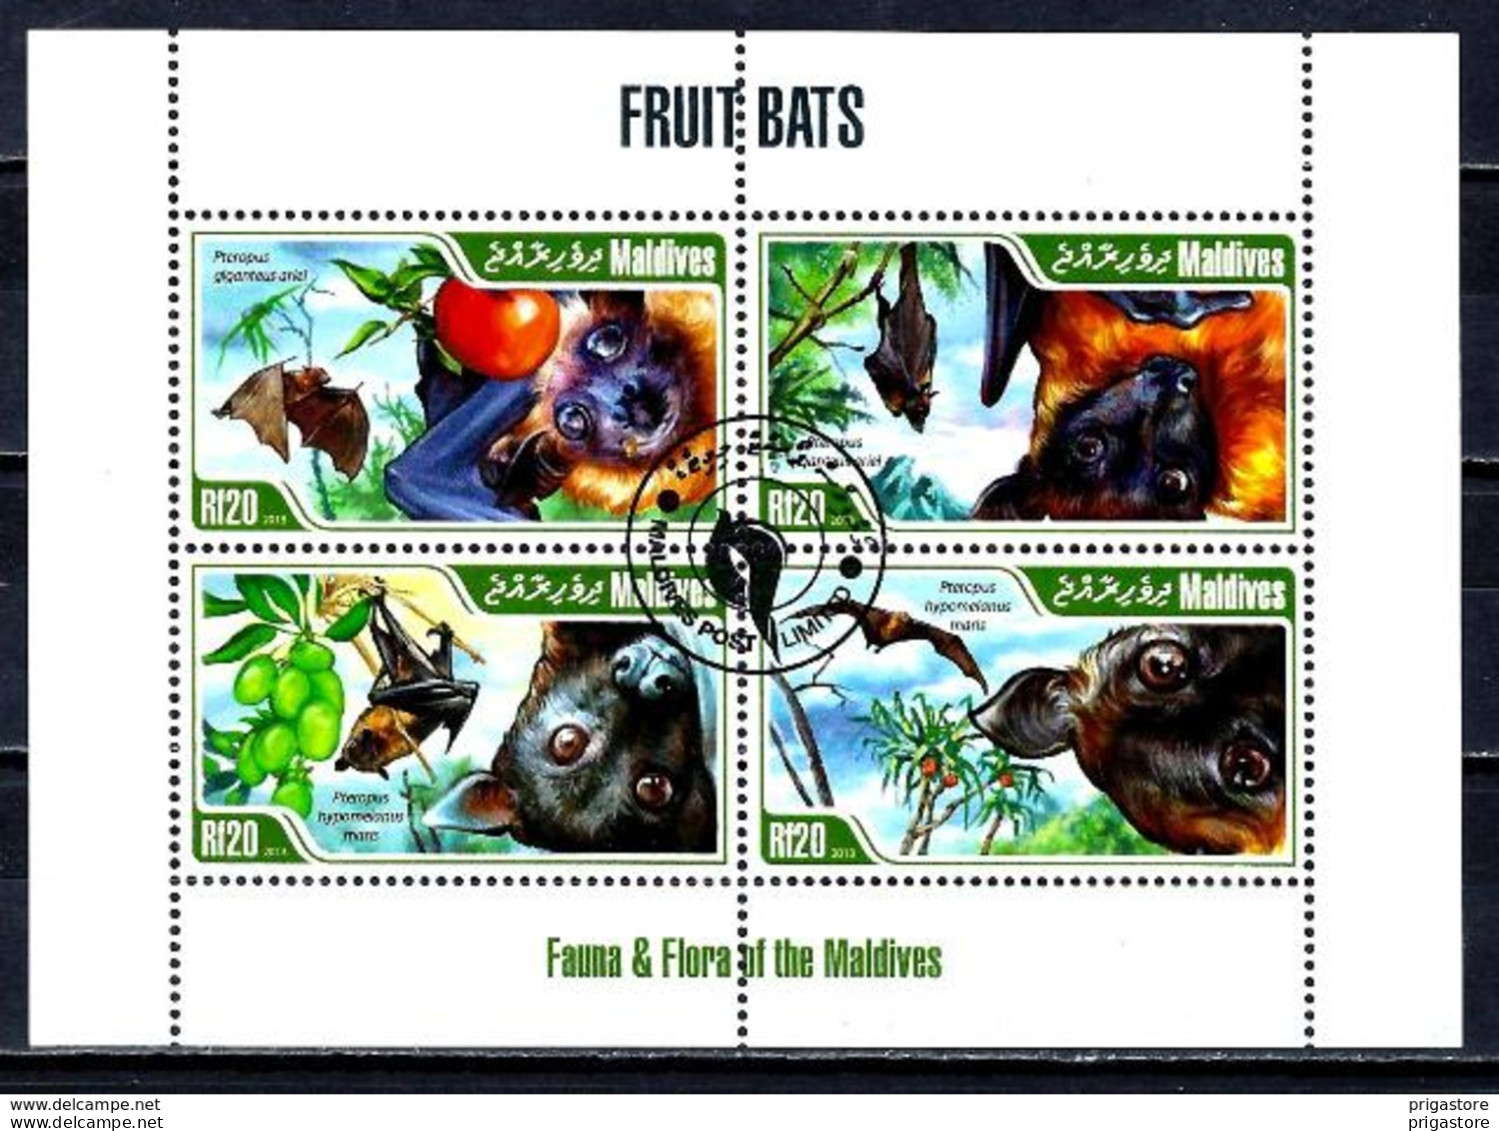 Animaux Chauves-souris Maldives 2013 (348) Yvert N° 4115 à 4118 Oblitérés Used - Bats